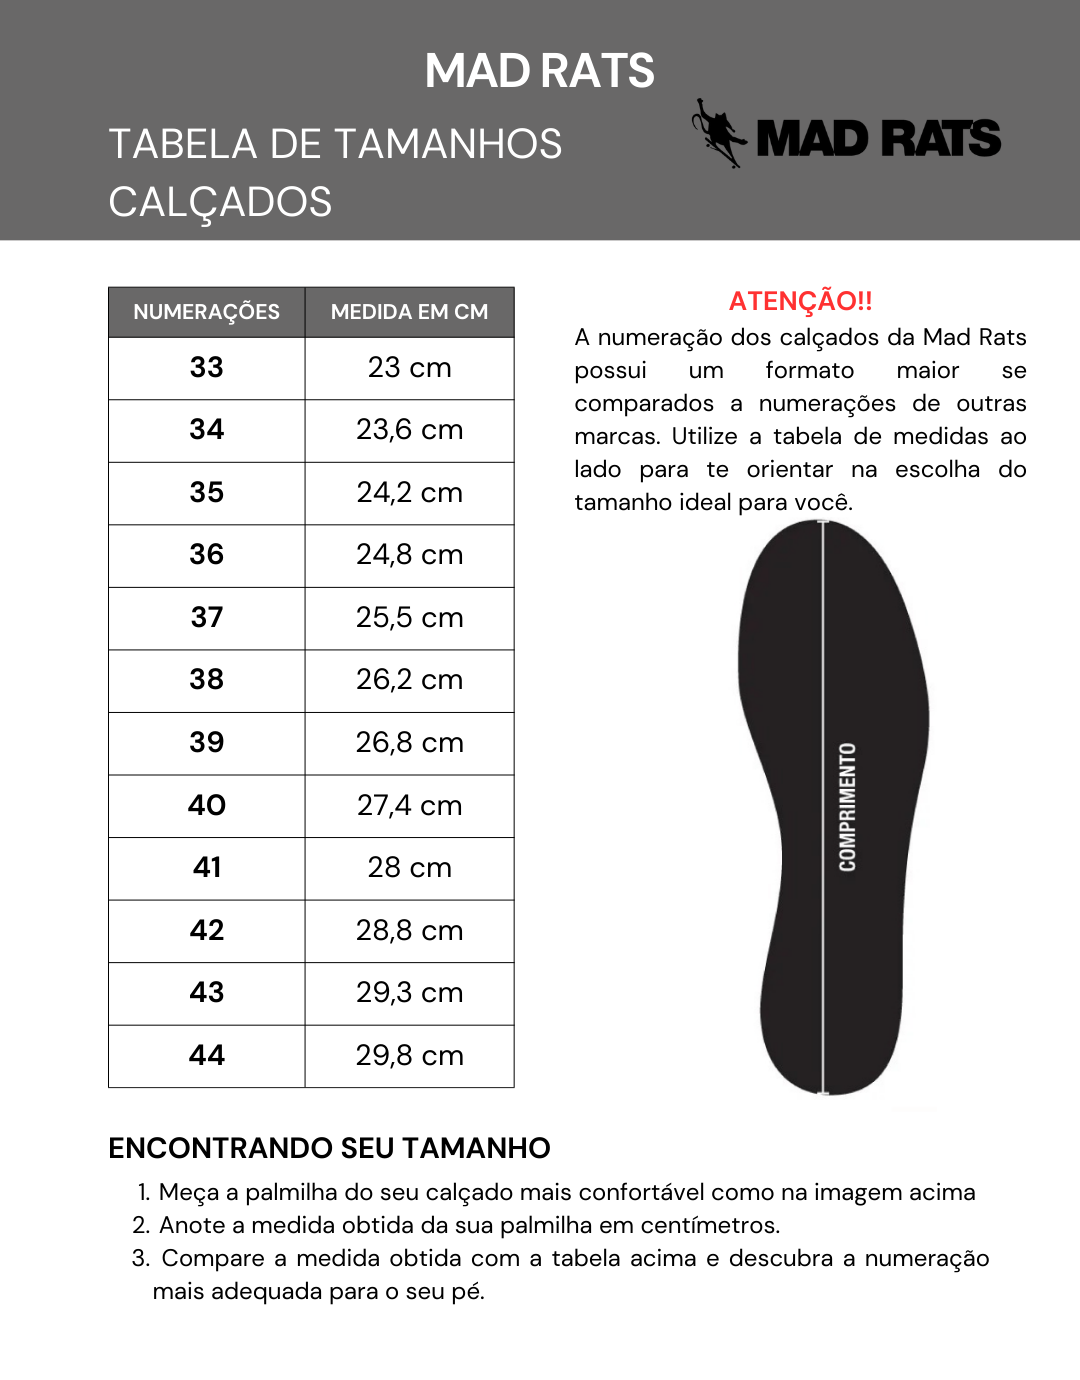 Tênis Mad Rats Old School Básico OS34LN 50000 - Preto/Branco (Camurça/Lona)  - Calçados Online Sandálias, Sapatos e Botas Femininas